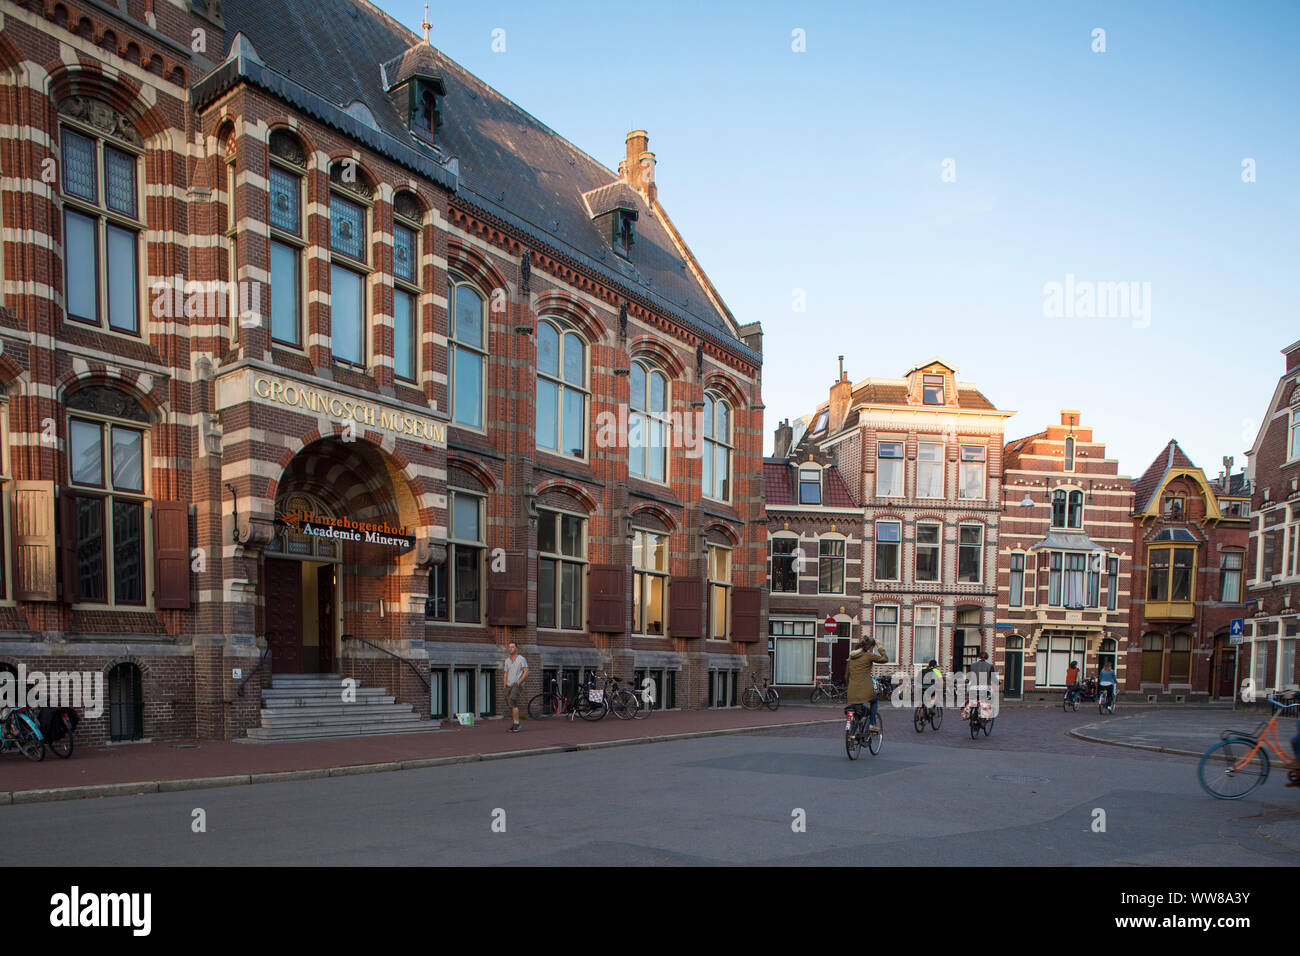 Netherlands, Groningen, Academie Minerva - Faculty of Art, Design and Pop Culture Stock Photo